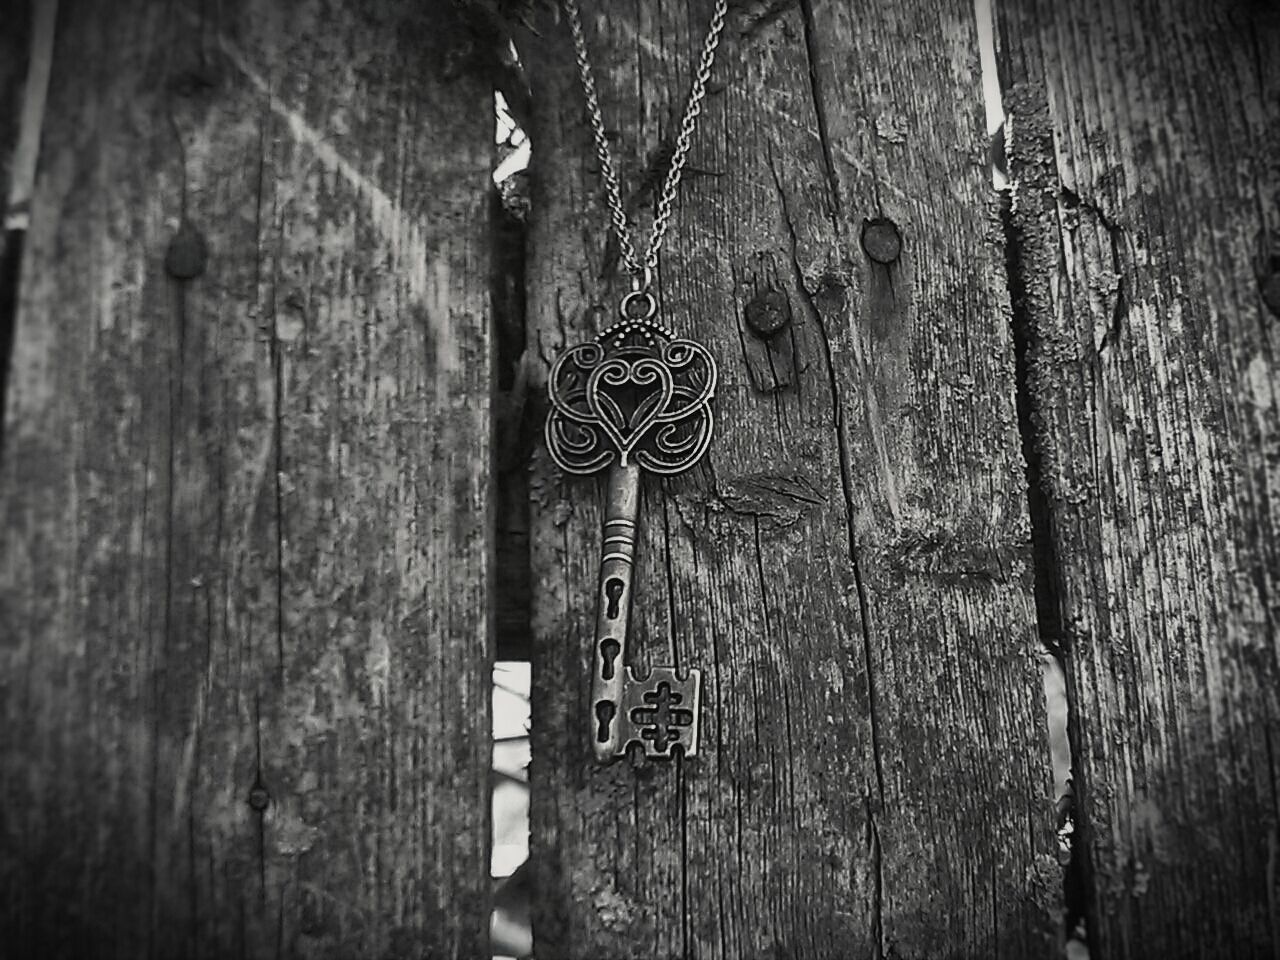 Skeleton key hanging on fence